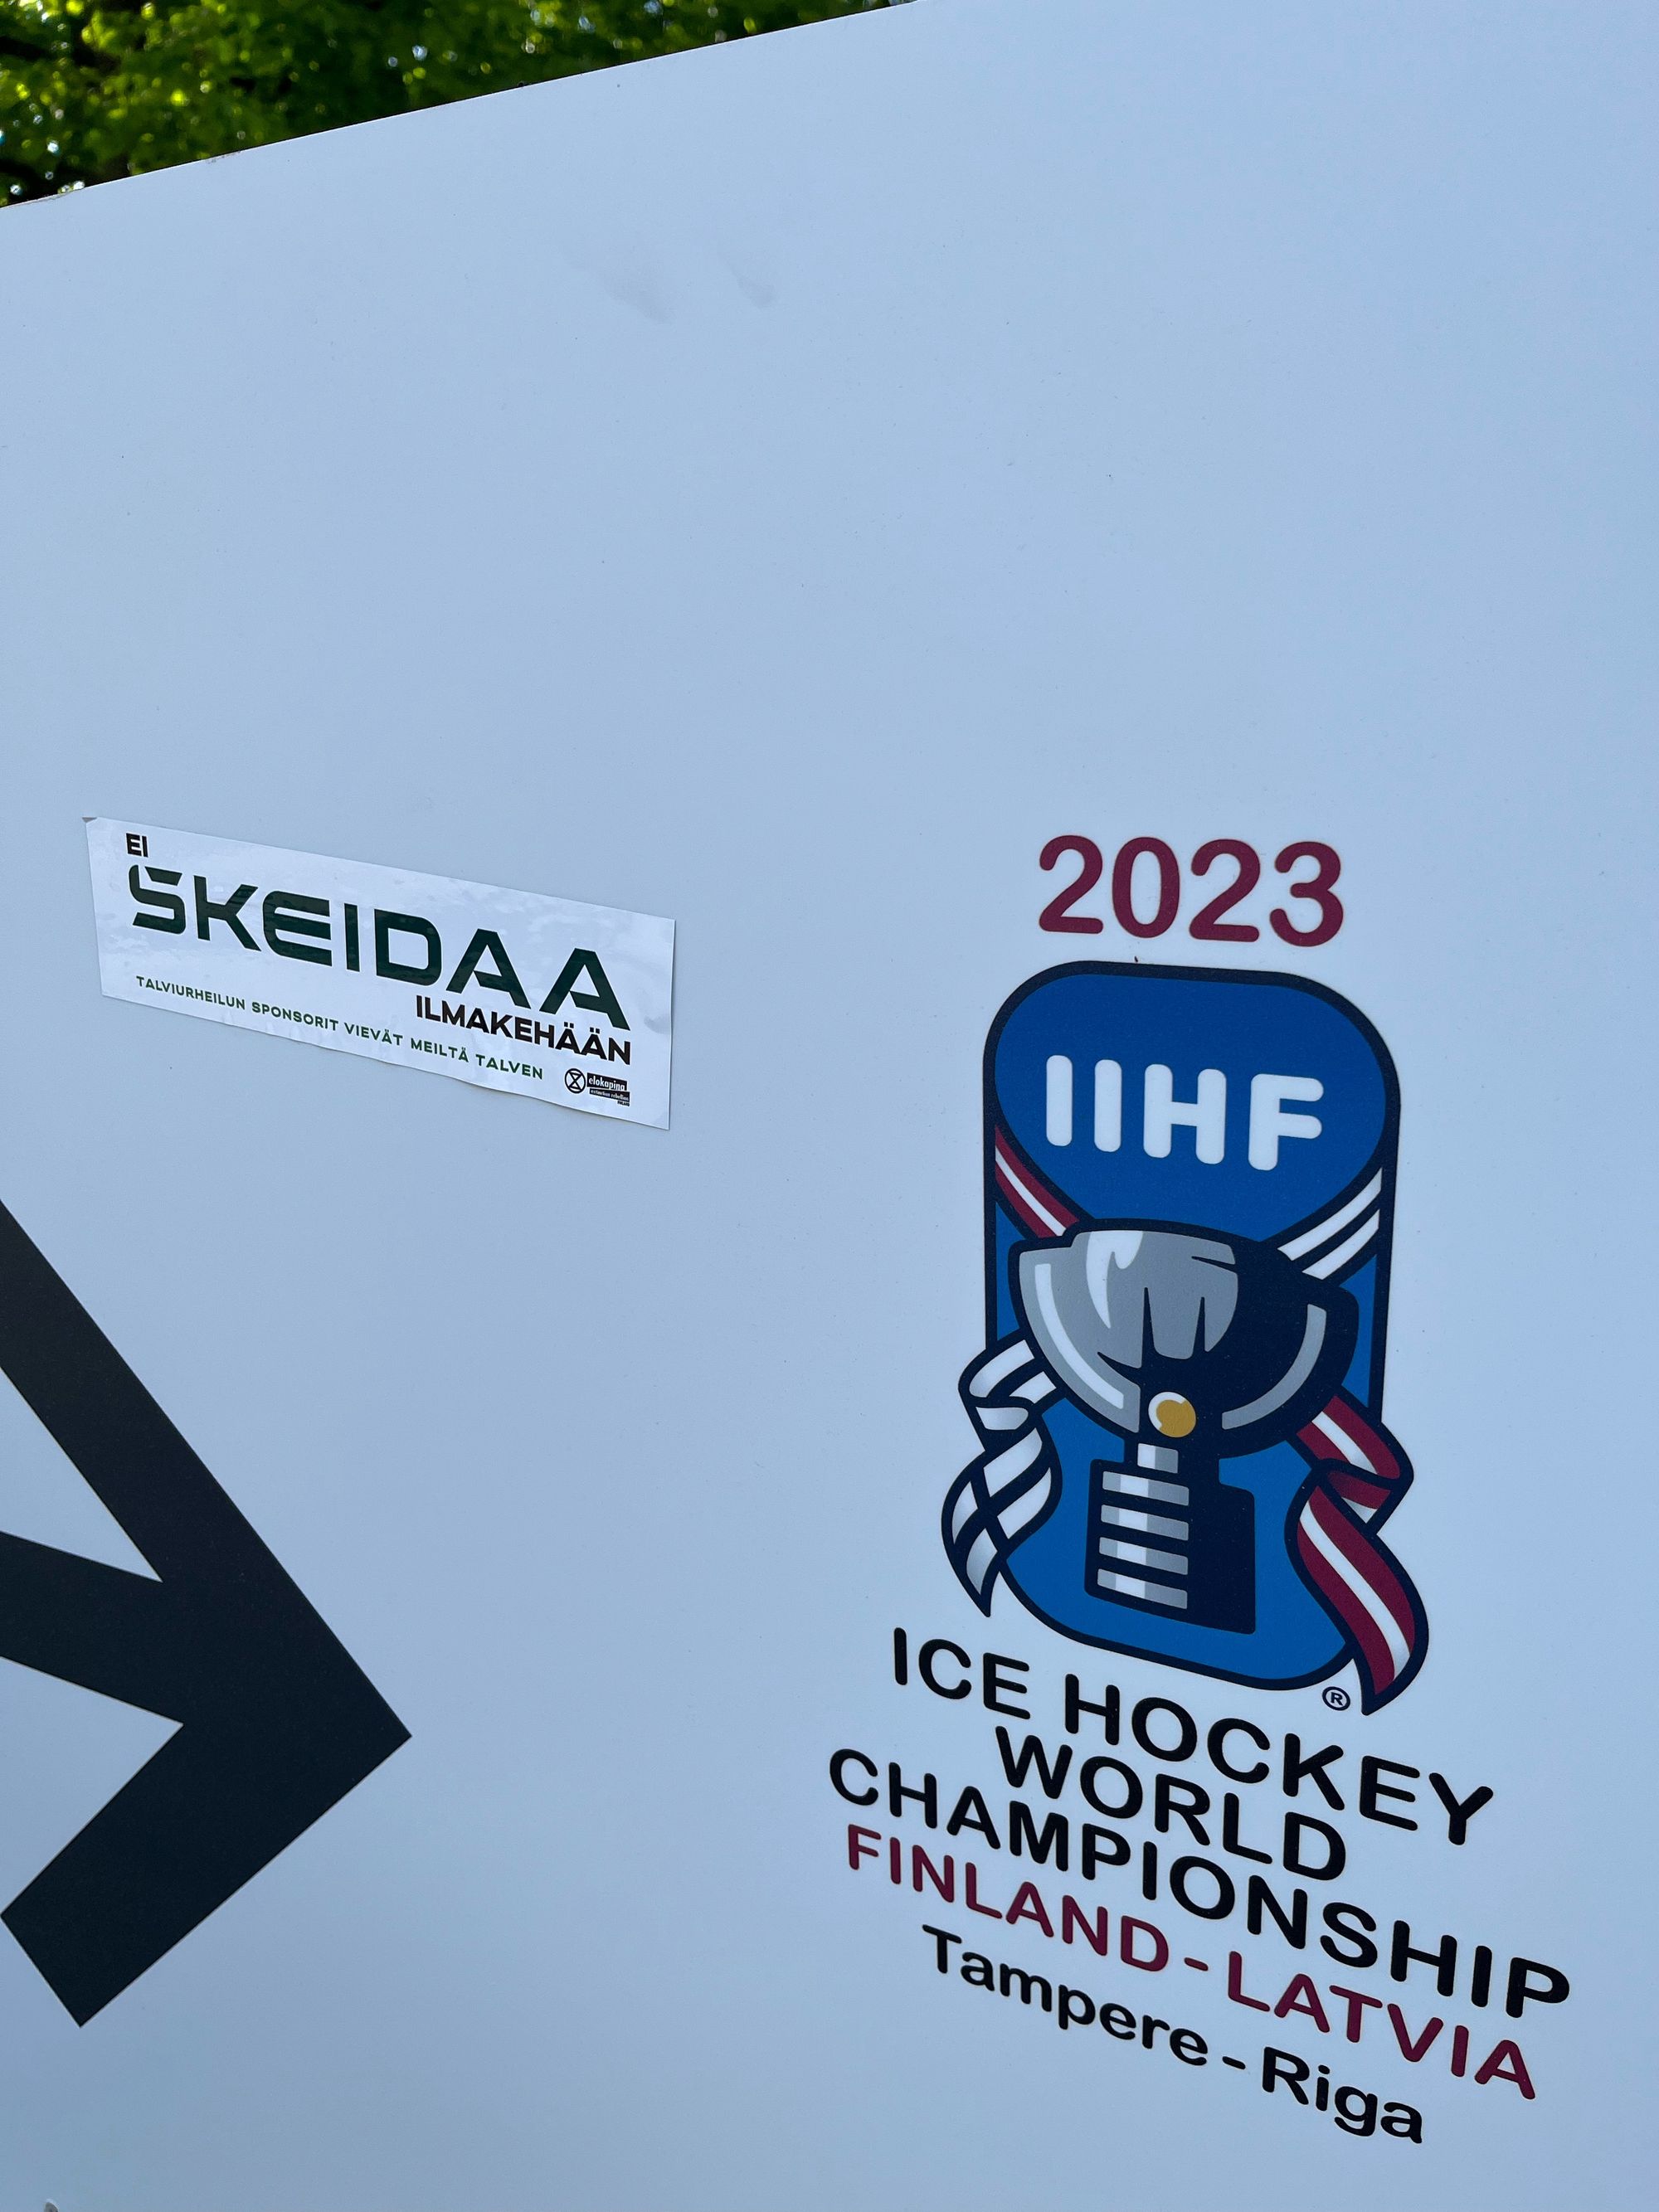 Ei skeidaa ilmakehään -tarra 2023 IIHF Ice Hockey World Championship Finland–Latvia (Tampere–Riga) -tekstien vieressä.